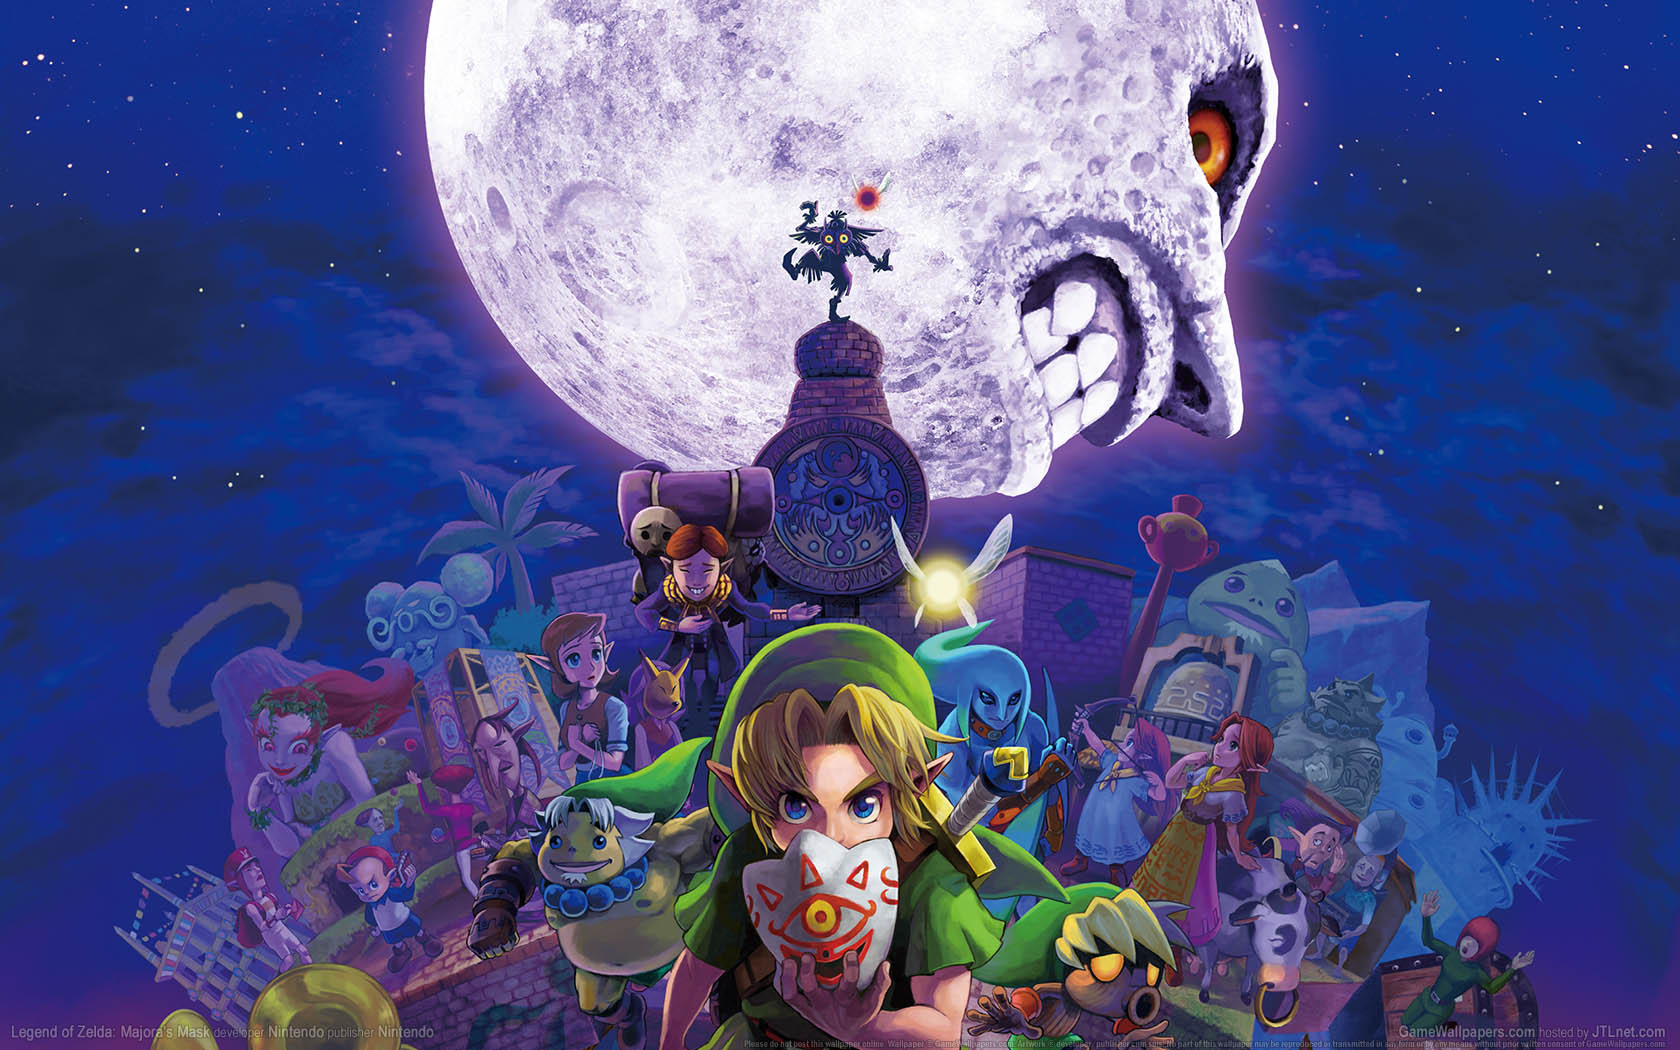 Legend of Zelda: Majora's Mask fond d'cran 01 1680x1050